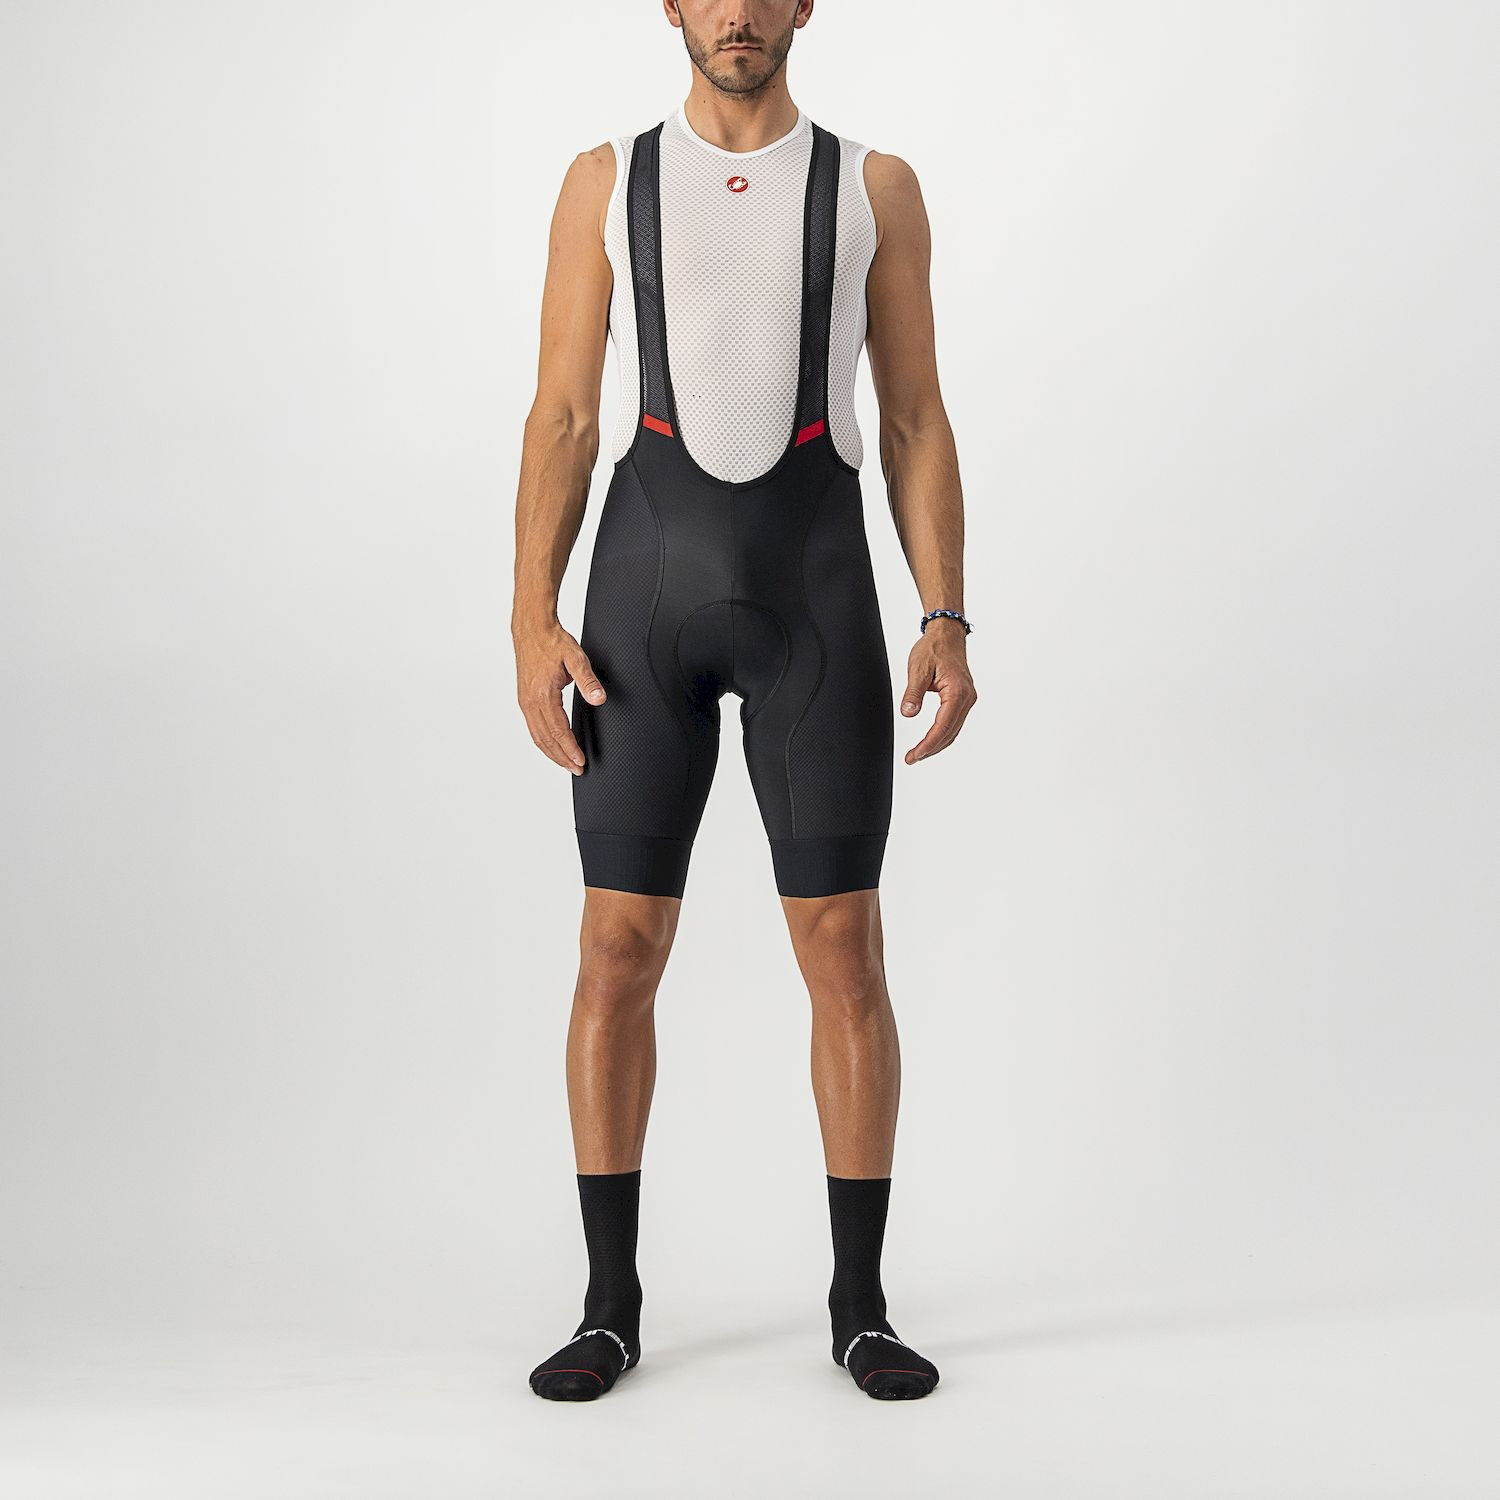 Castelli Competizione - Pantaloncini da ciclismo - Uomo